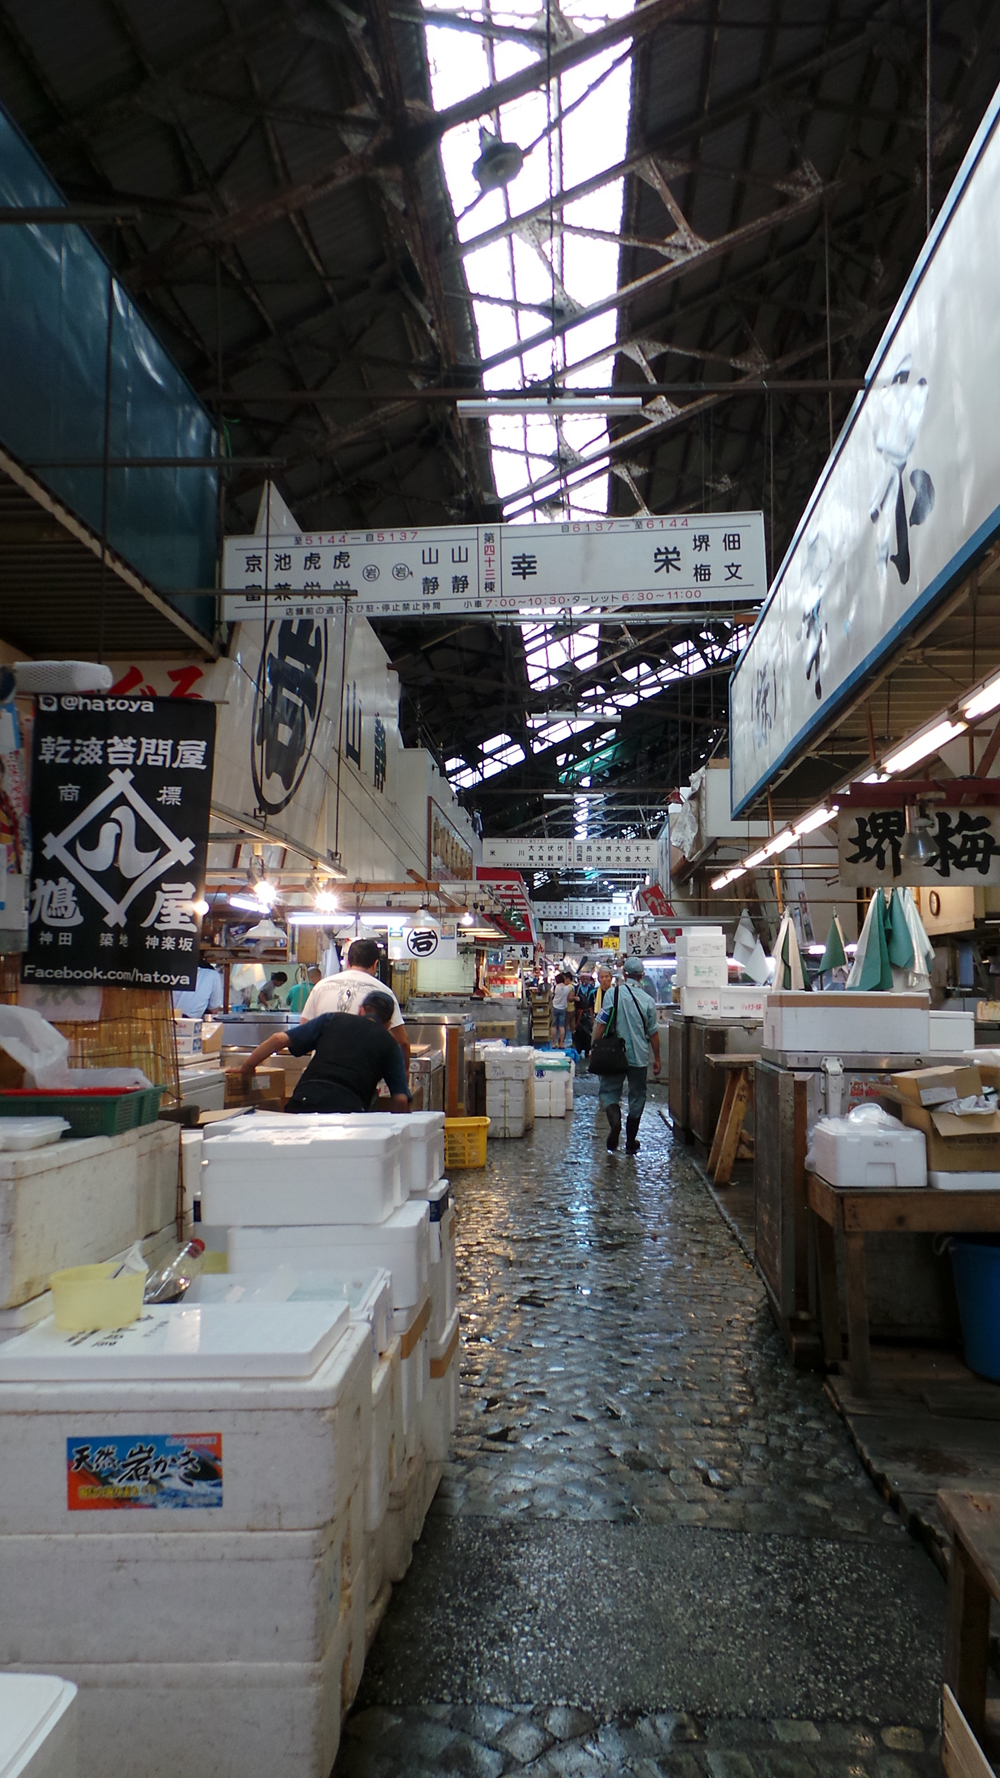 Visiter la halle aux poissons du marché de Tsukiji, Tokyo, Japon.